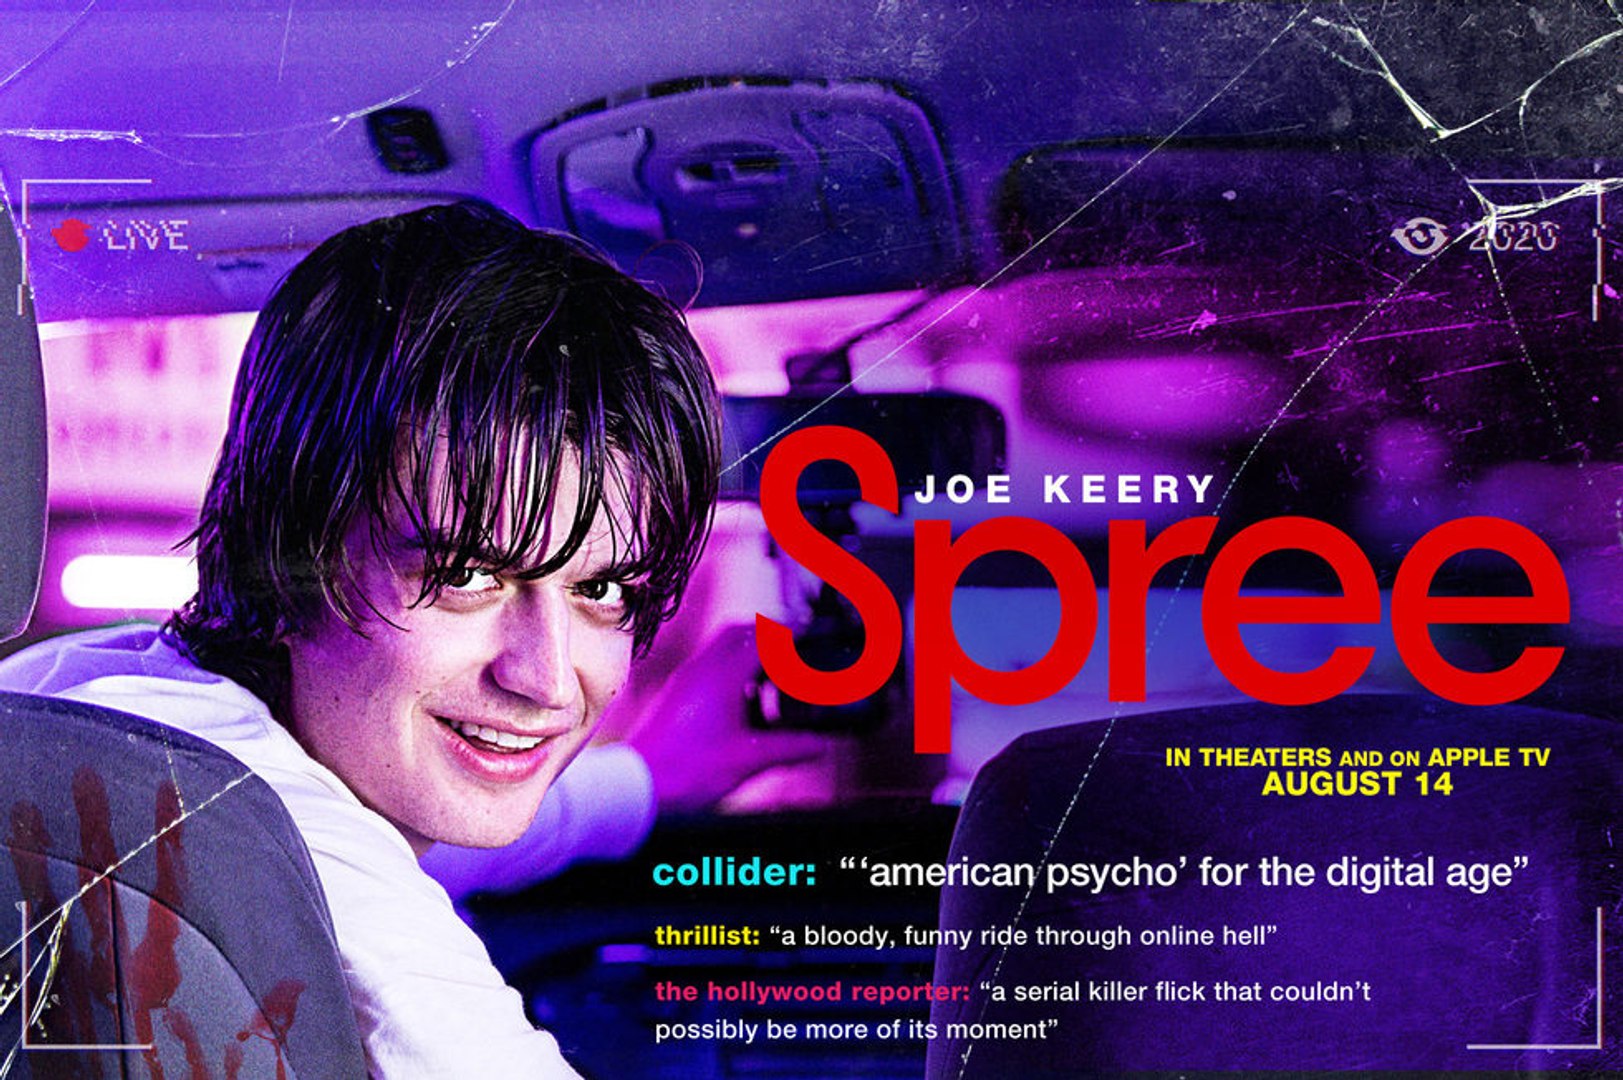 Stranger Things star Joe Keery stars in new movie SPREE: Trailer